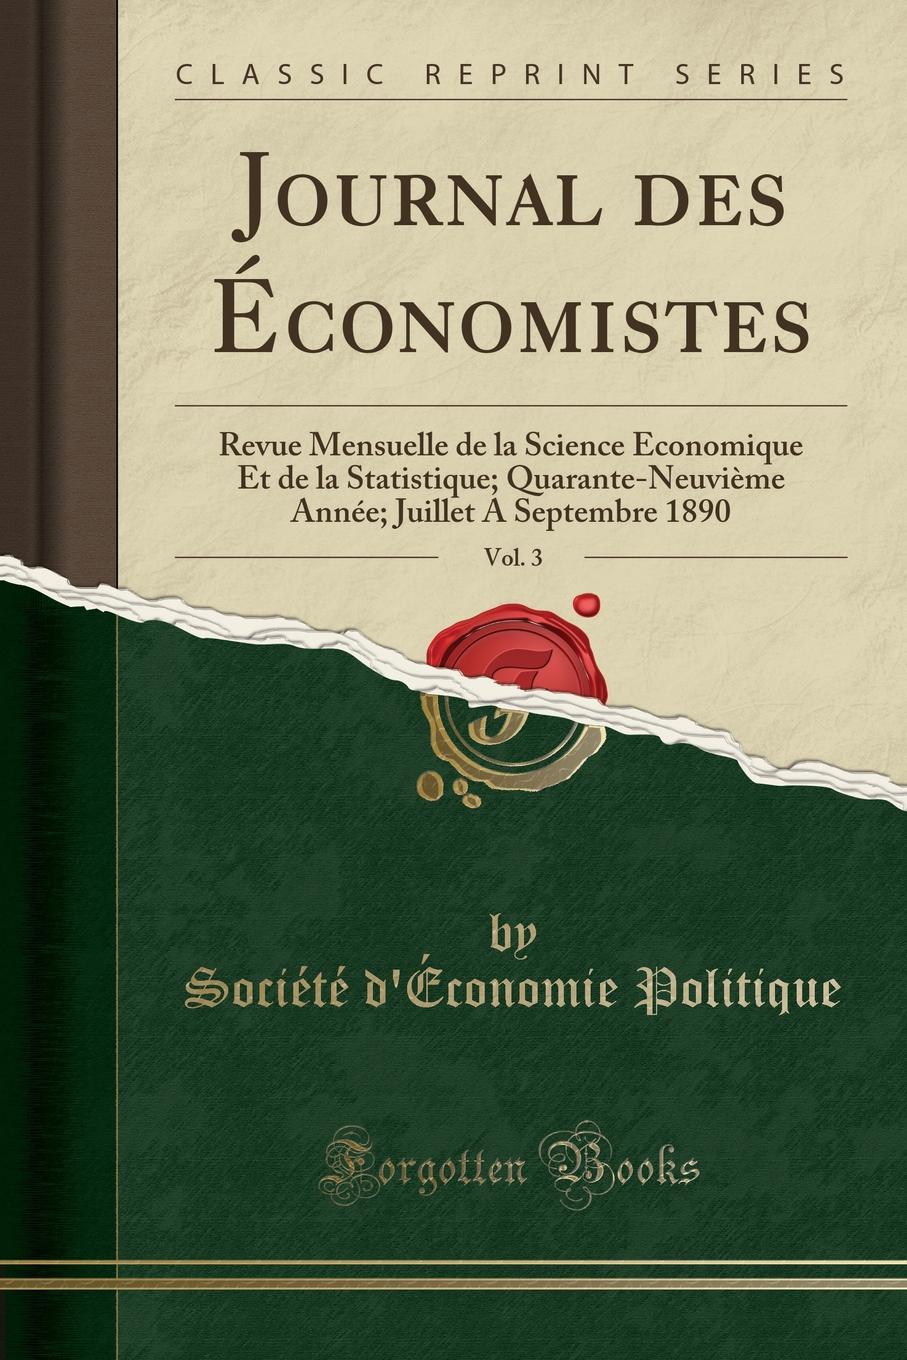 фото Journal des Economistes, Vol. 3. Revue Mensuelle de la Science Economique Et de la Statistique; Quarante-Neuvieme Annee; Juillet A Septembre 1890 (Classic Reprint)